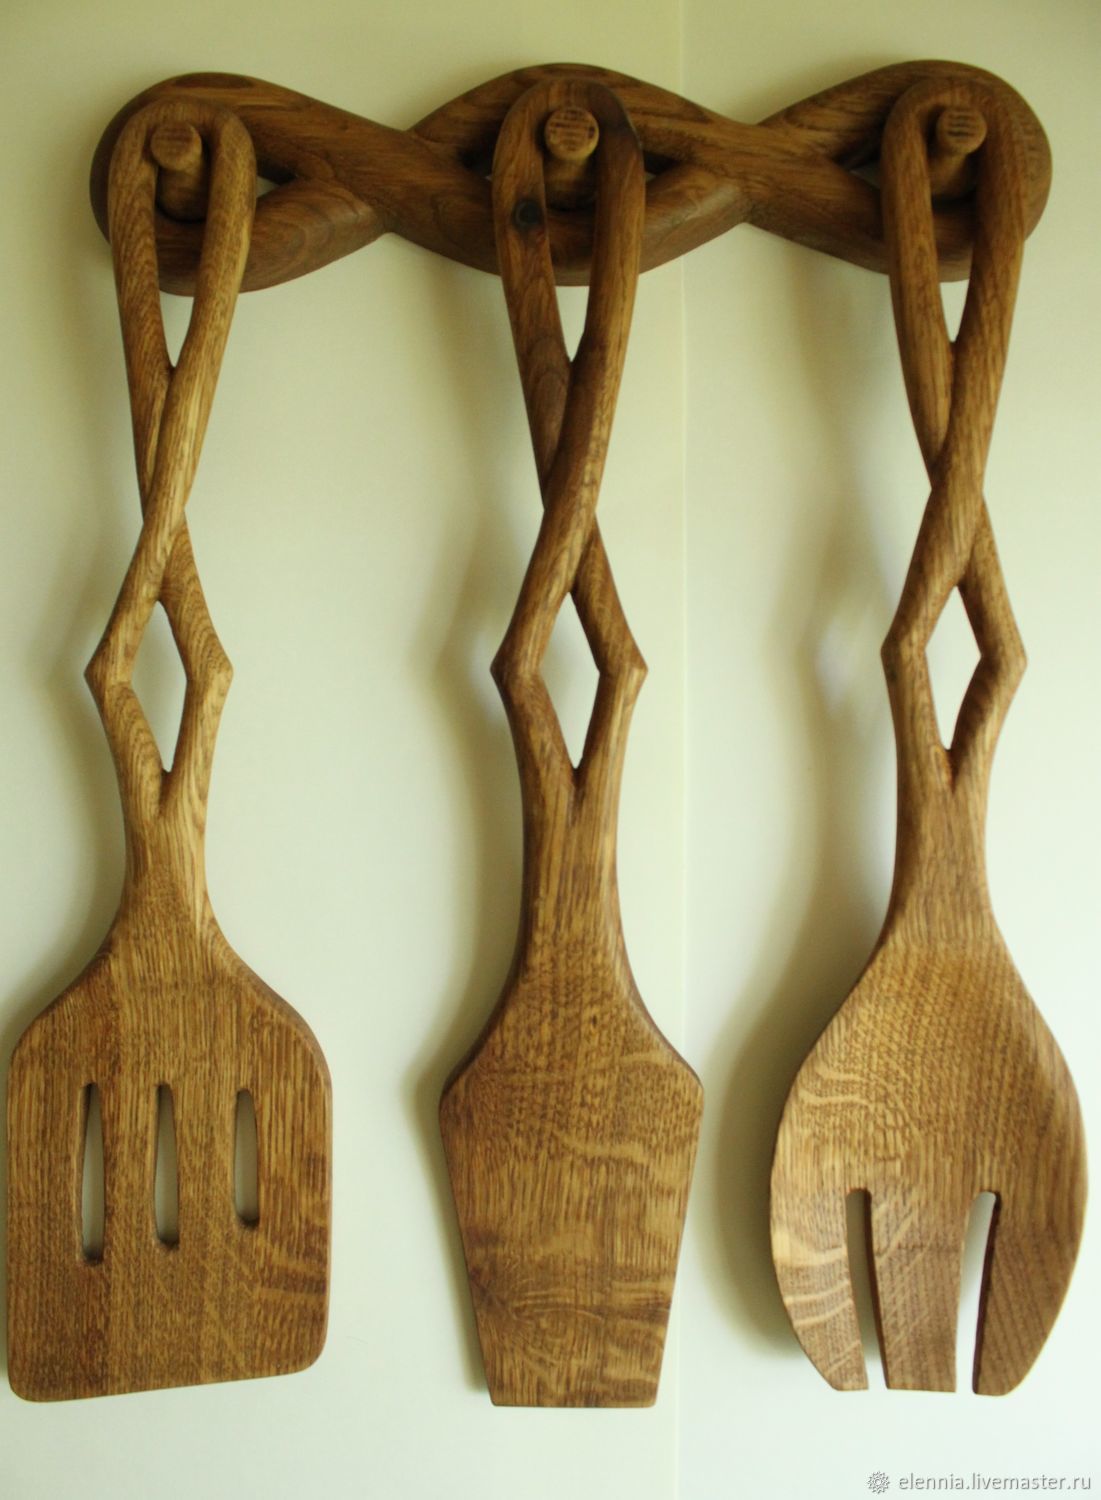 Резной набор деревянных лопаток для кухни. Для настоящего повара - Сайт .